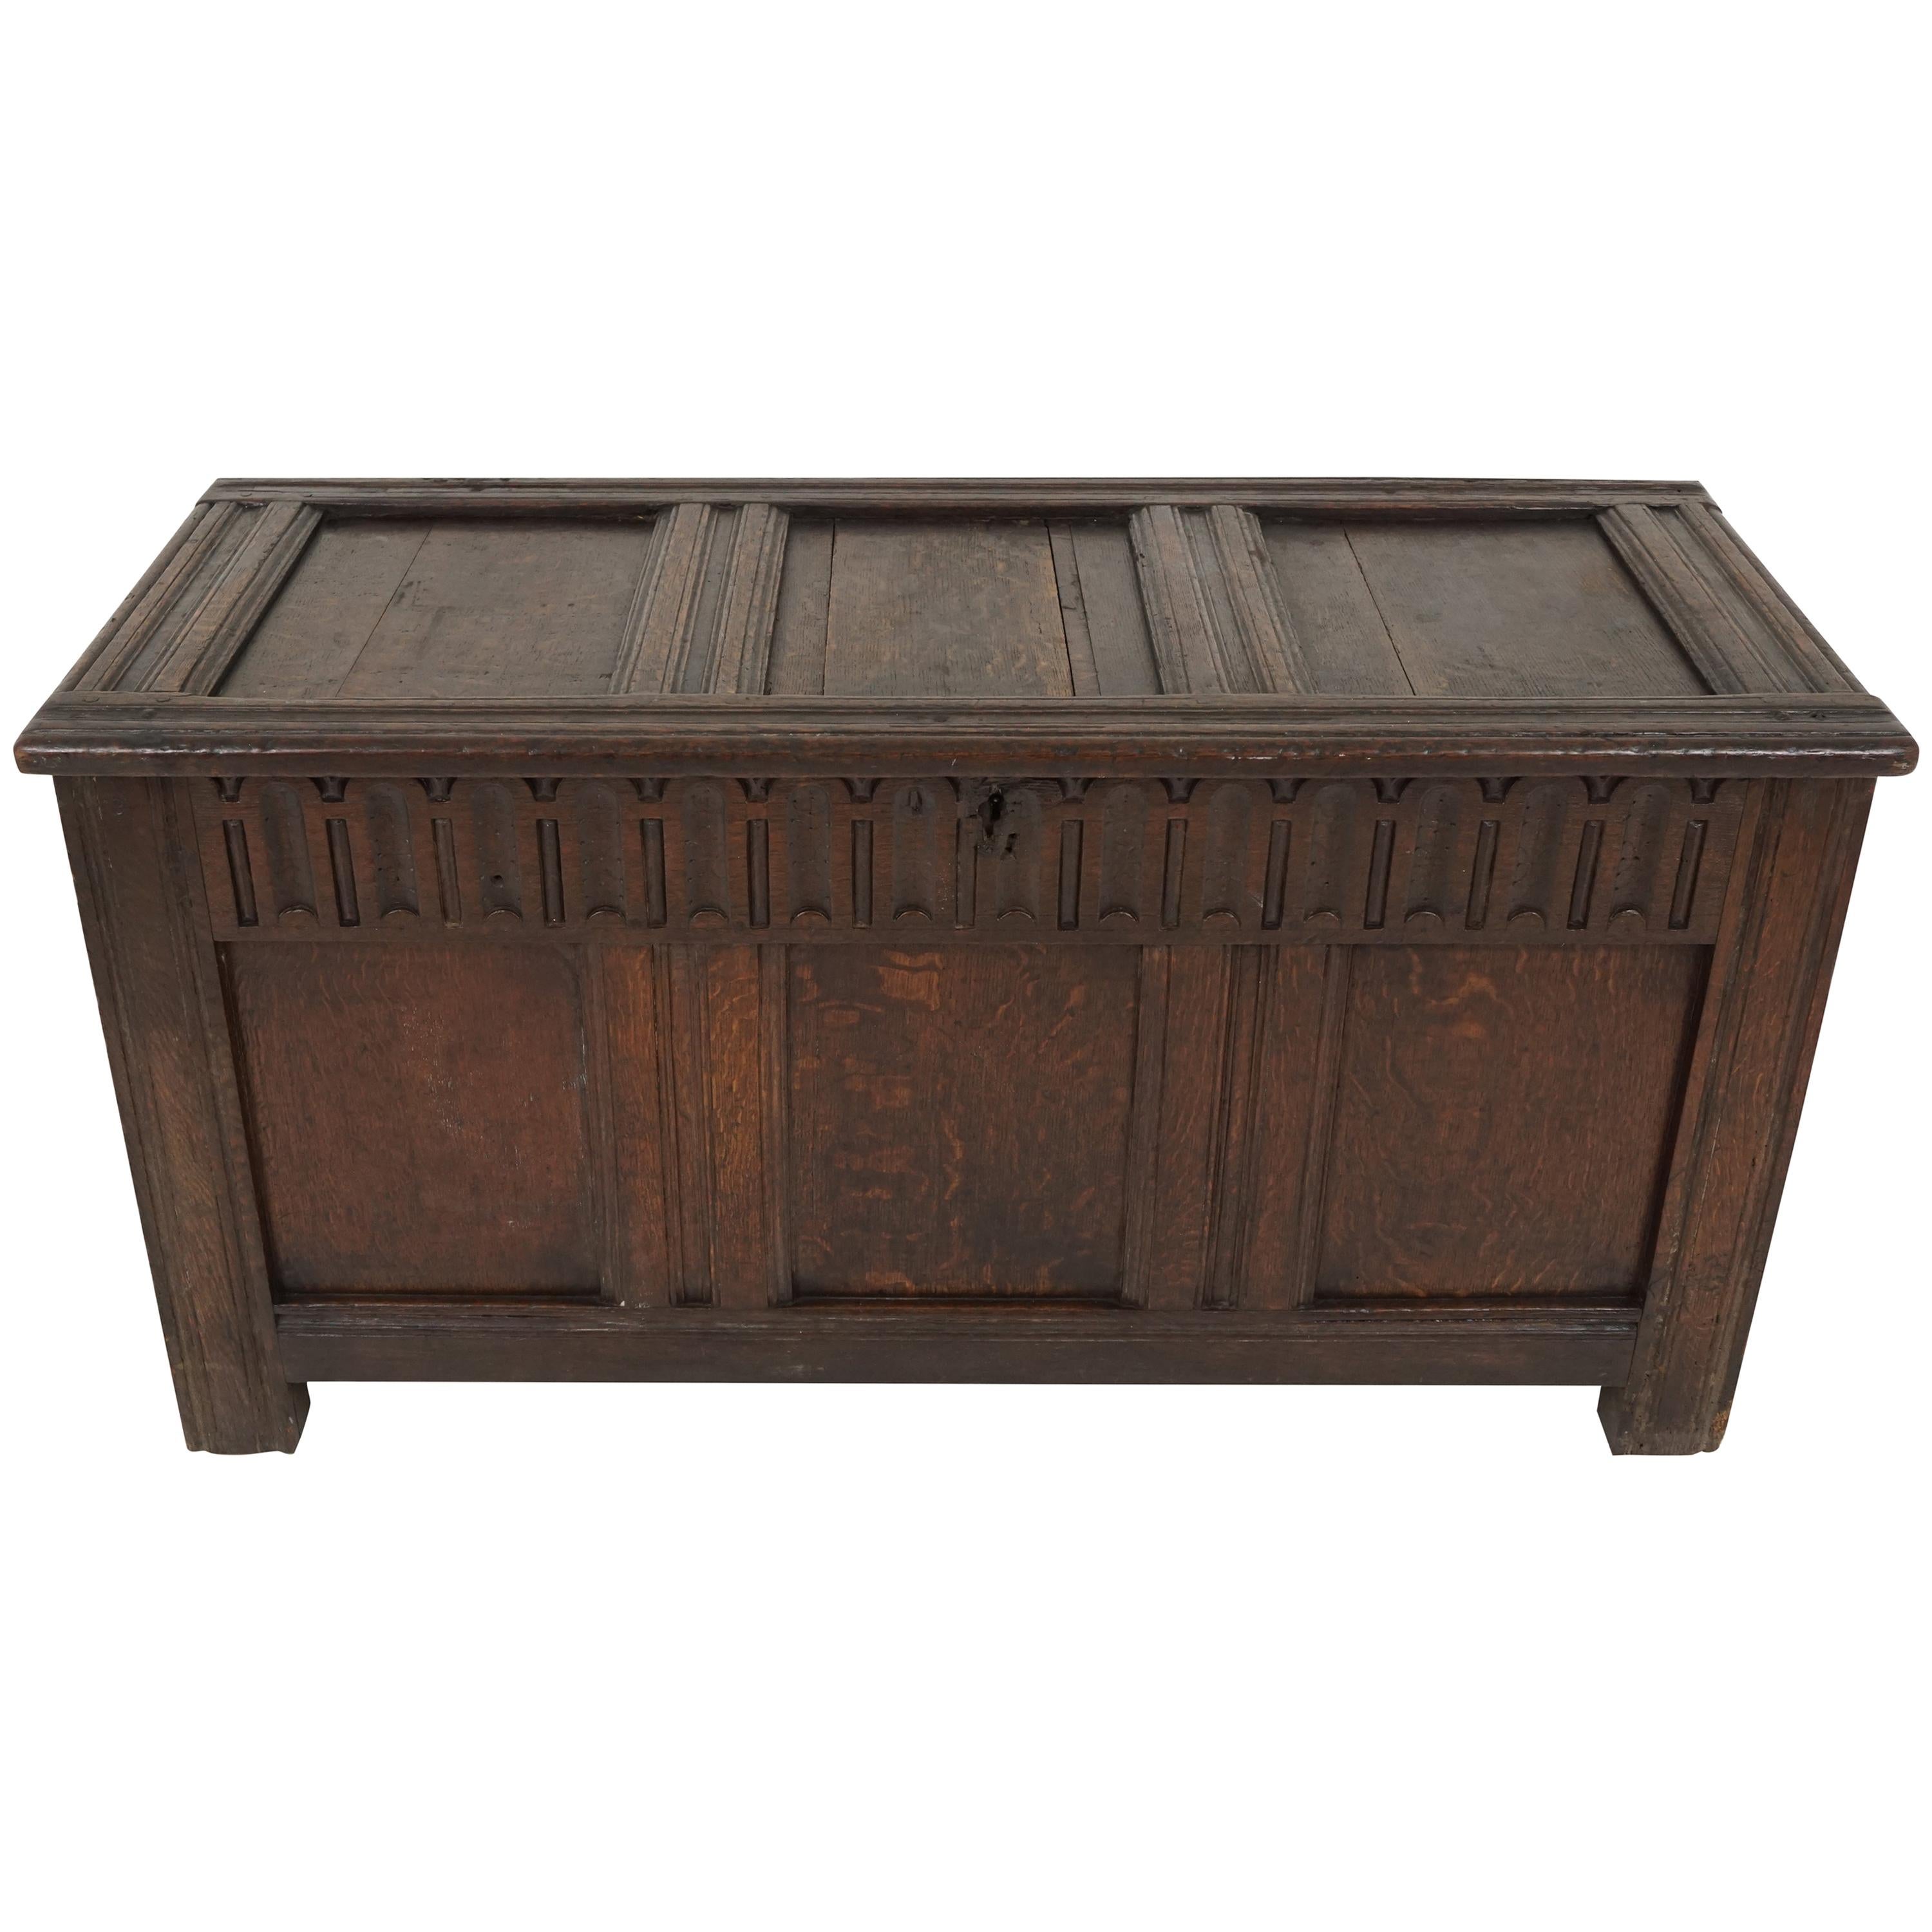 Antique Oak Coffer, Georgian Kist Trunk, Antique Furniture, Scotland 1780, B1842